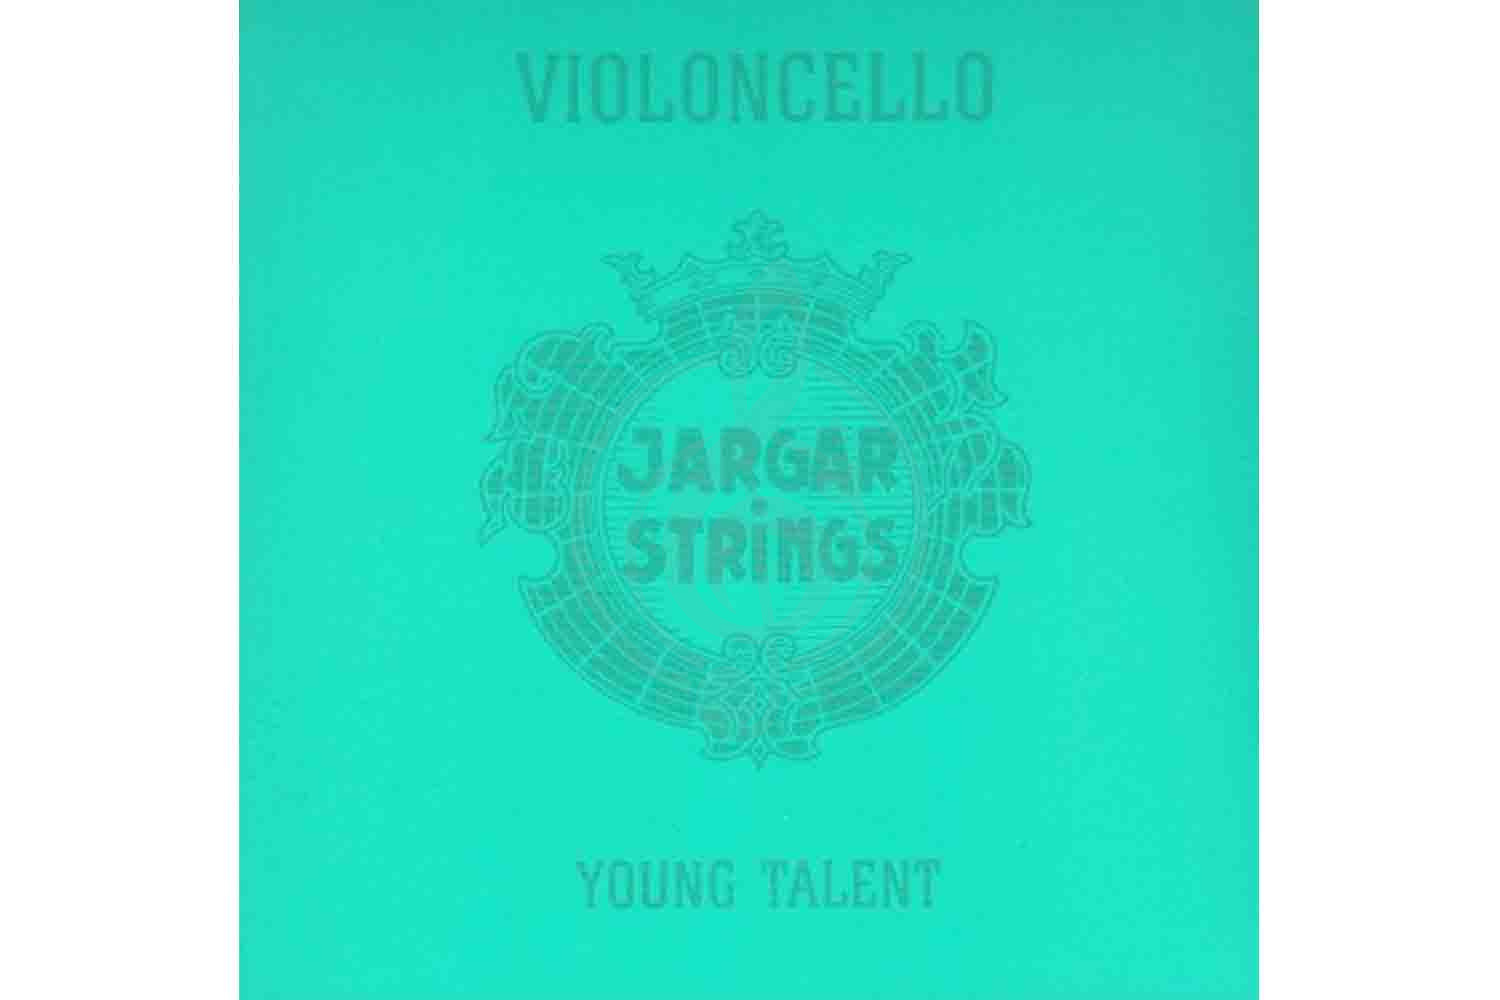 Струны для виолончели Jargar Strings Cello-1/4-Set Young Talent - Комплект струн для виолончели 1/4, Jargar Strings Strings Cello-1/4-Set Young Talent в магазине DominantaMusic - фото 1